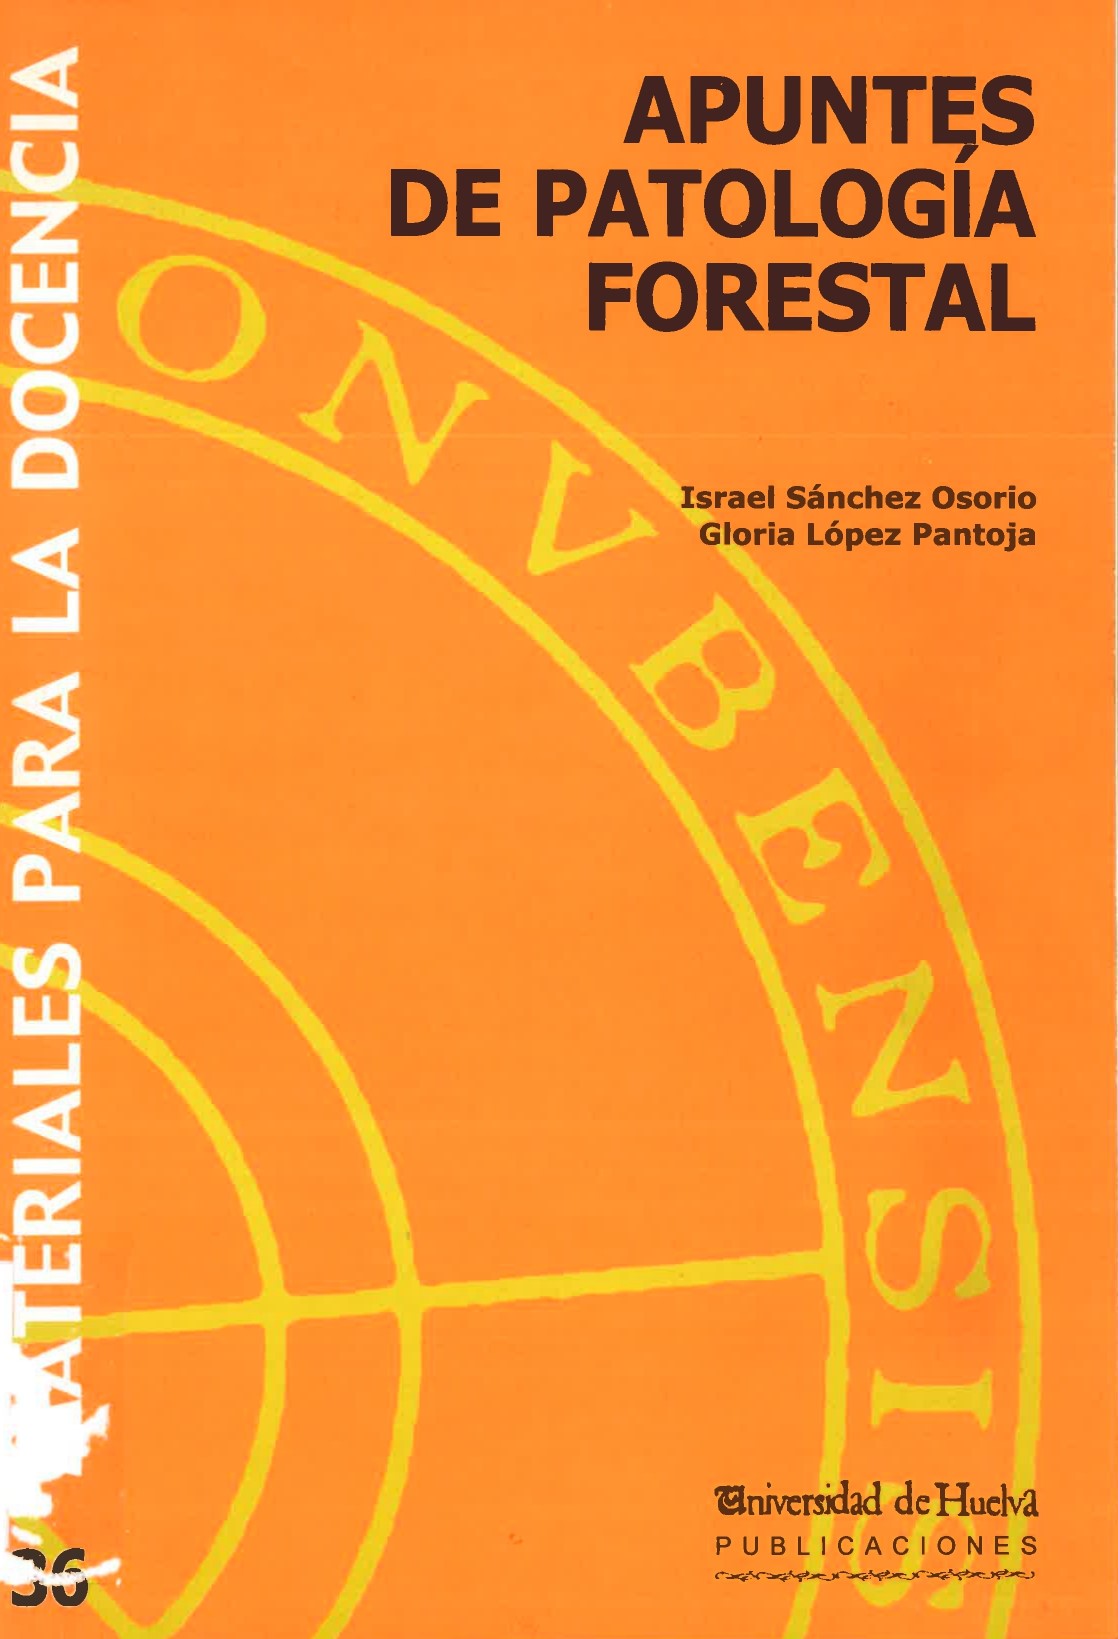 Imagen de portada del libro Apuntes de patología forestal